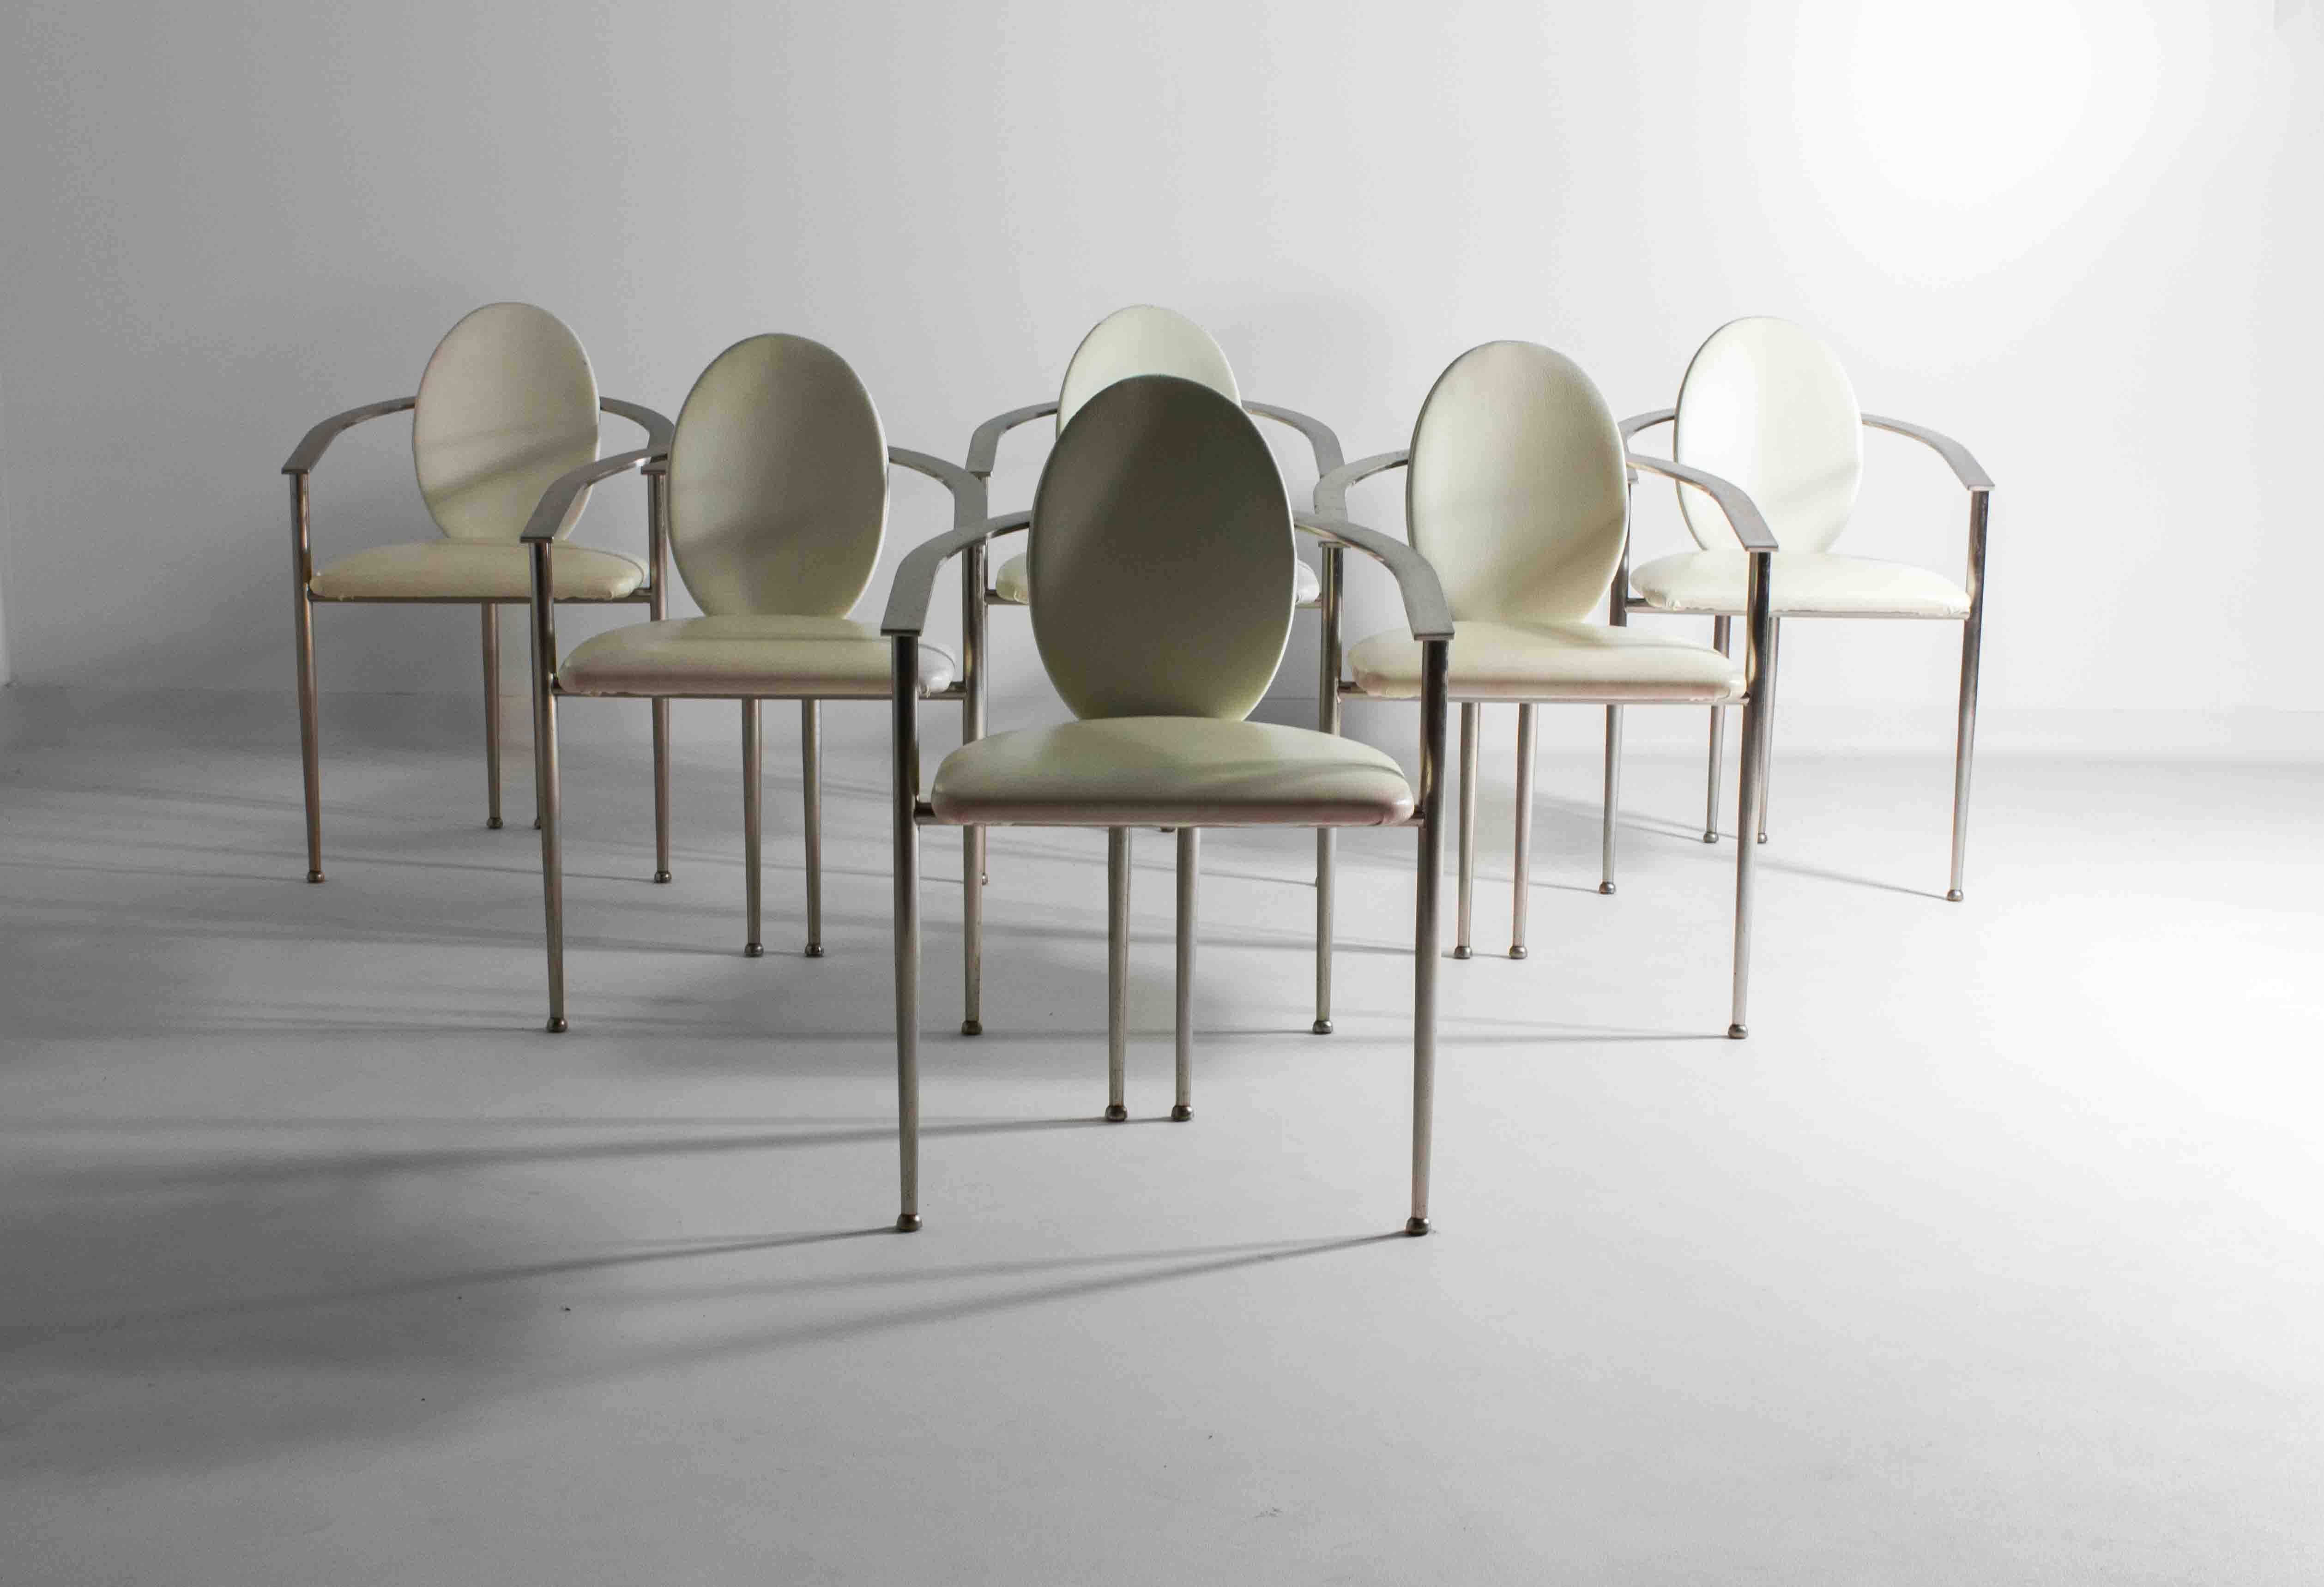 Ein einzigartiges Set aus sechs postmodernen Esszimmerstühlen von Belgochrom aus den 80er Jahren, gepolstert mit weißem Leder und getragen von einem Gestell aus gebürstetem Stahl. Diese schweren Stühle vereinen Stil und Funktionalität auf perfekte